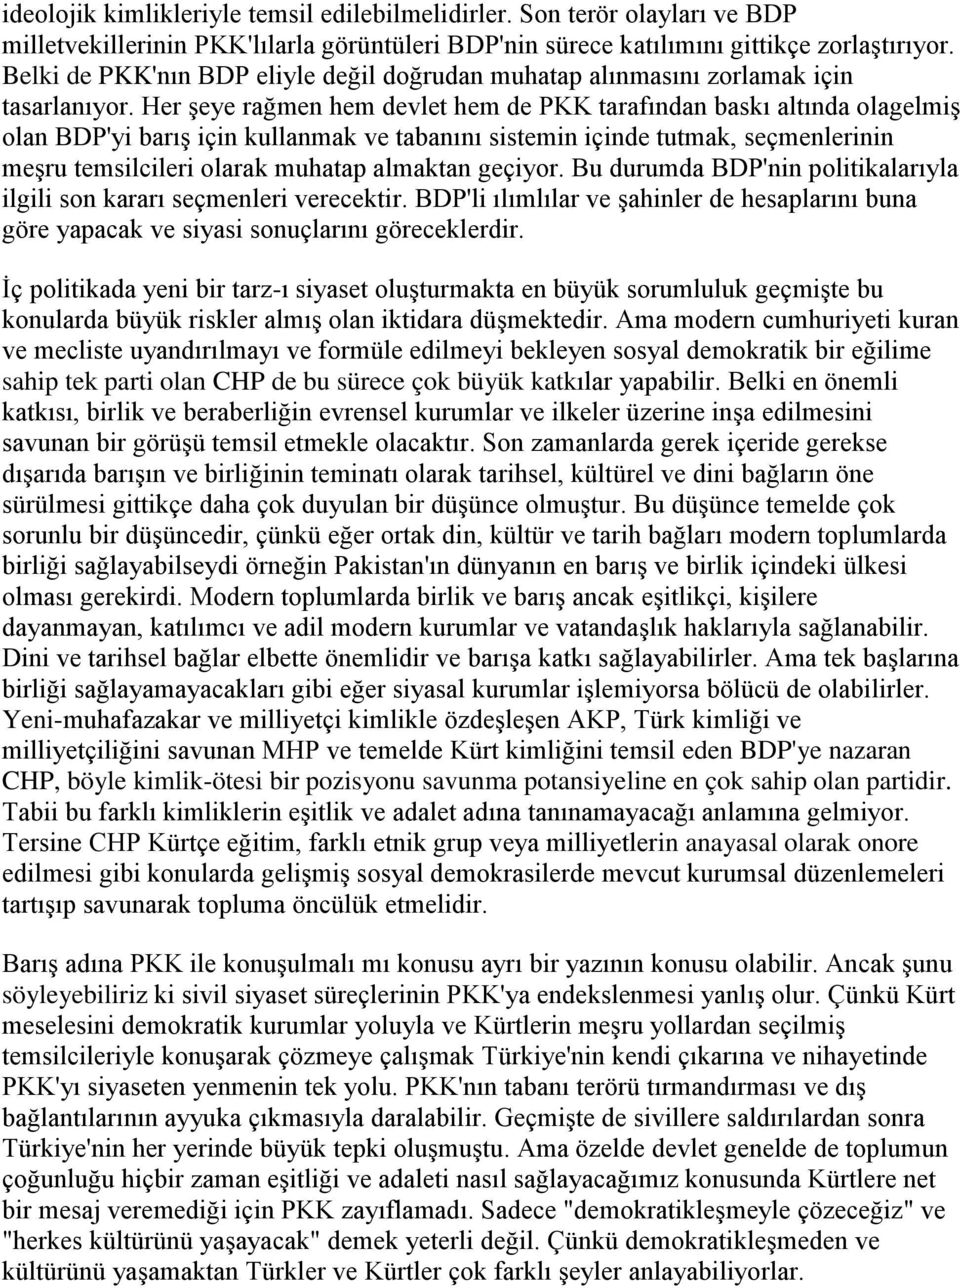 Her şeye rağmen hem devlet hem de PKK tarafından baskı altında olagelmiş olan BDP'yi barış için kullanmak ve tabanını sistemin içinde tutmak, seçmenlerinin meşru temsilcileri olarak muhatap almaktan